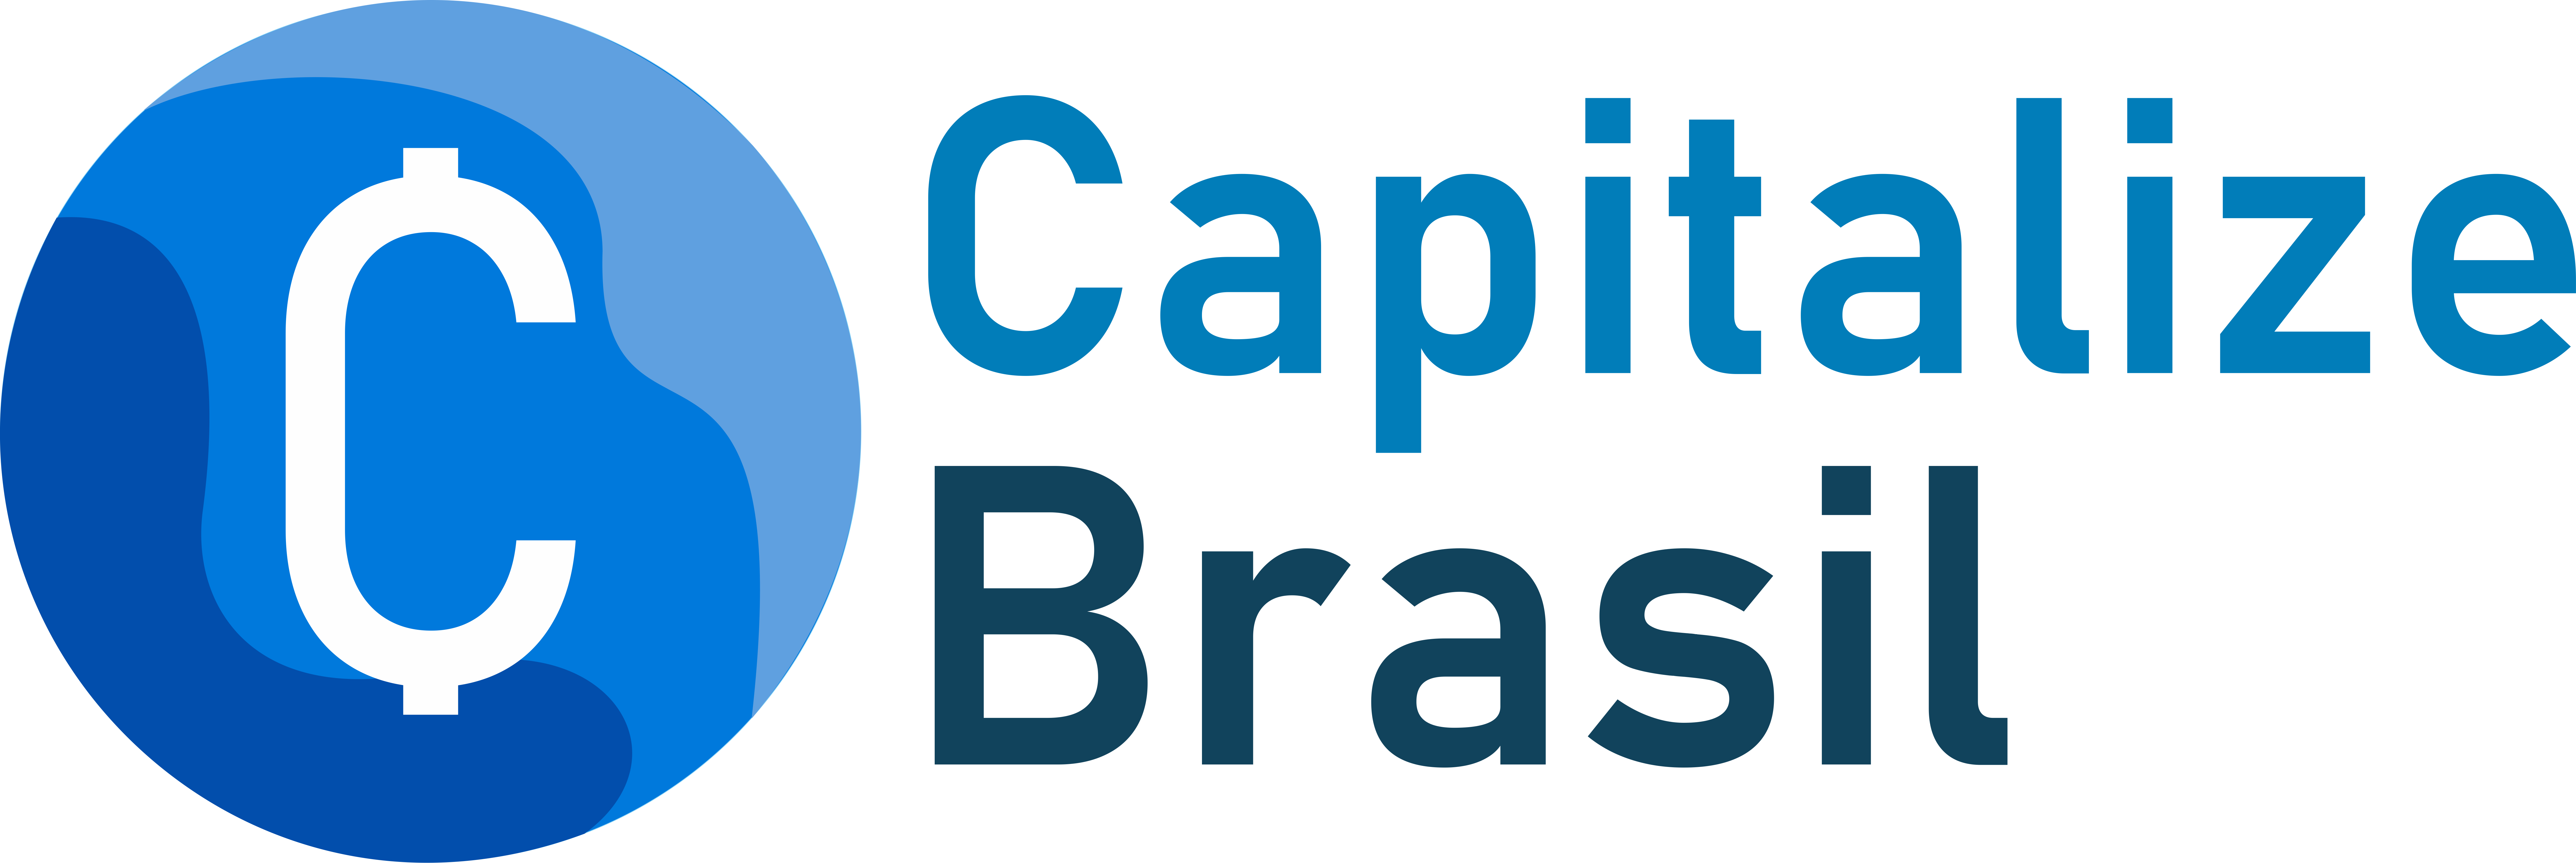 Capitalize Brasil